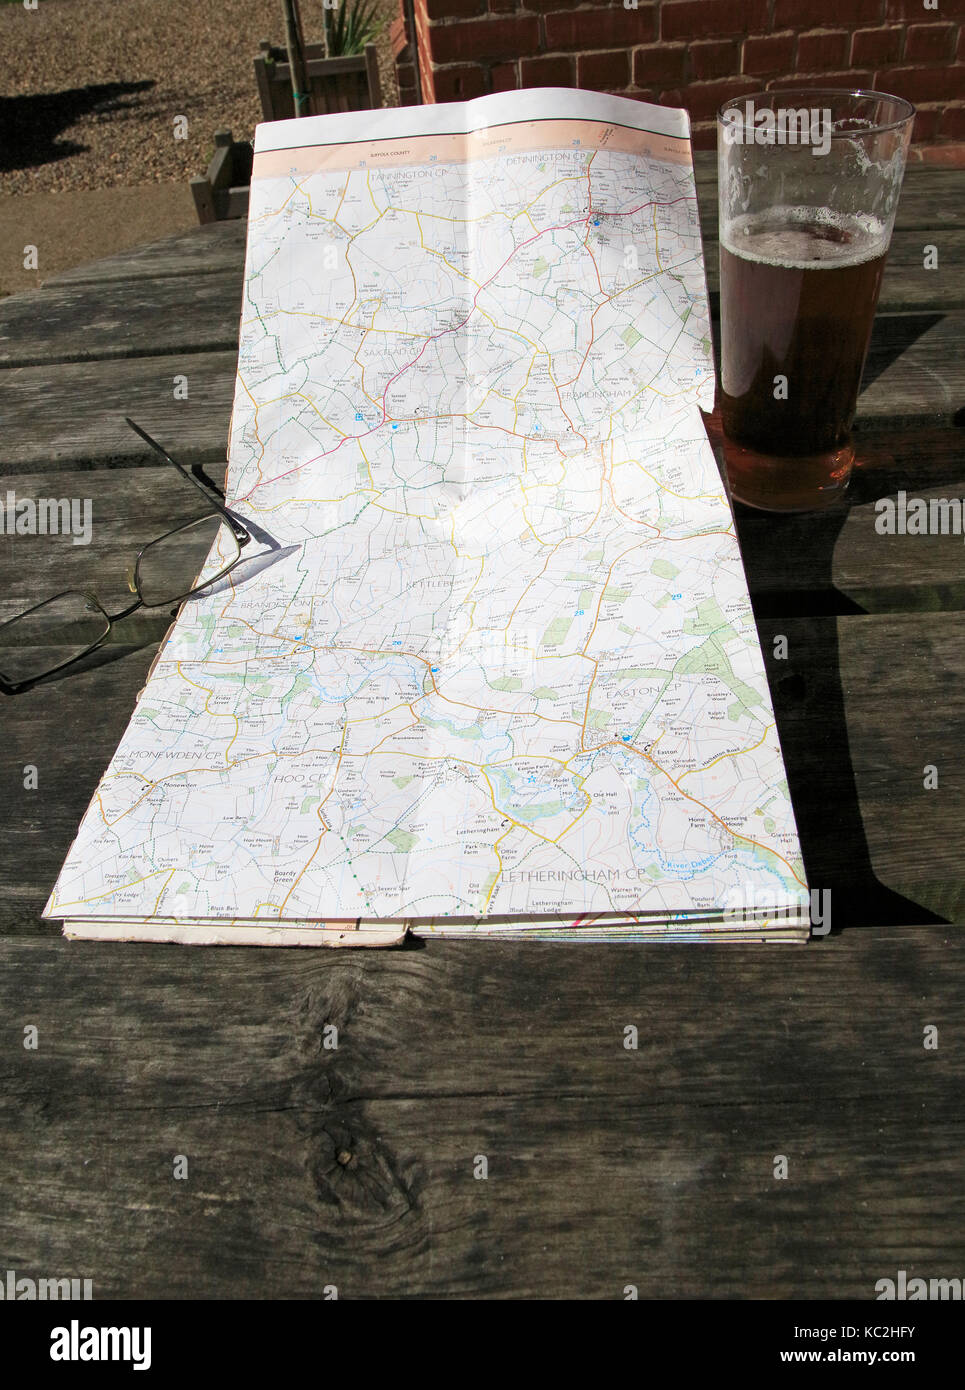 Ordnance Survey Explorer mappa aperto sulla tavola con occhiali e vetro pinta di birra, Suffolk, Inghilterra, Regno Unito Foto Stock